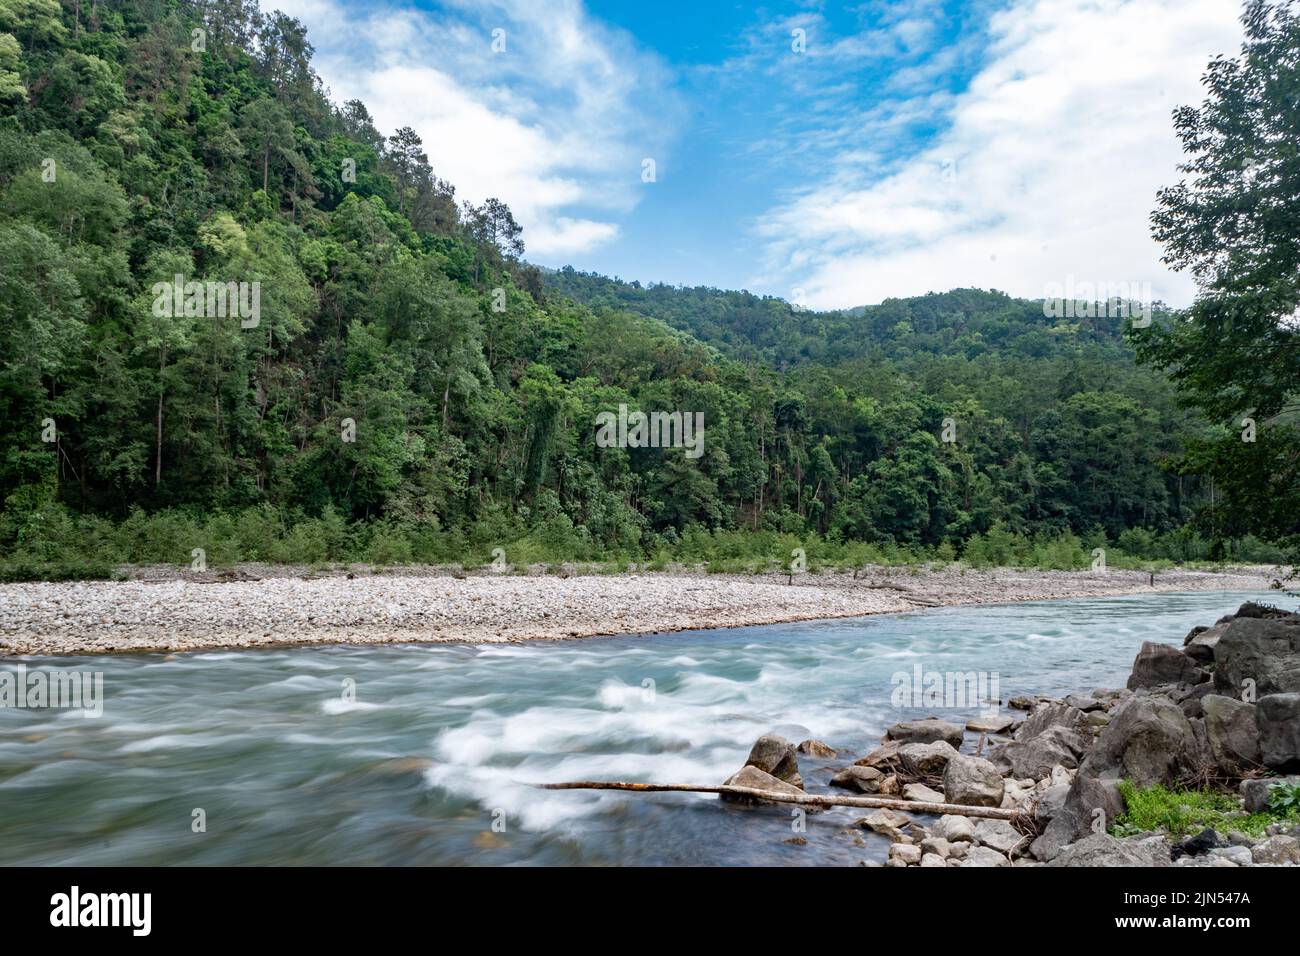 Belle rivière et forêt vierge au Bhoutan Banque D'Images